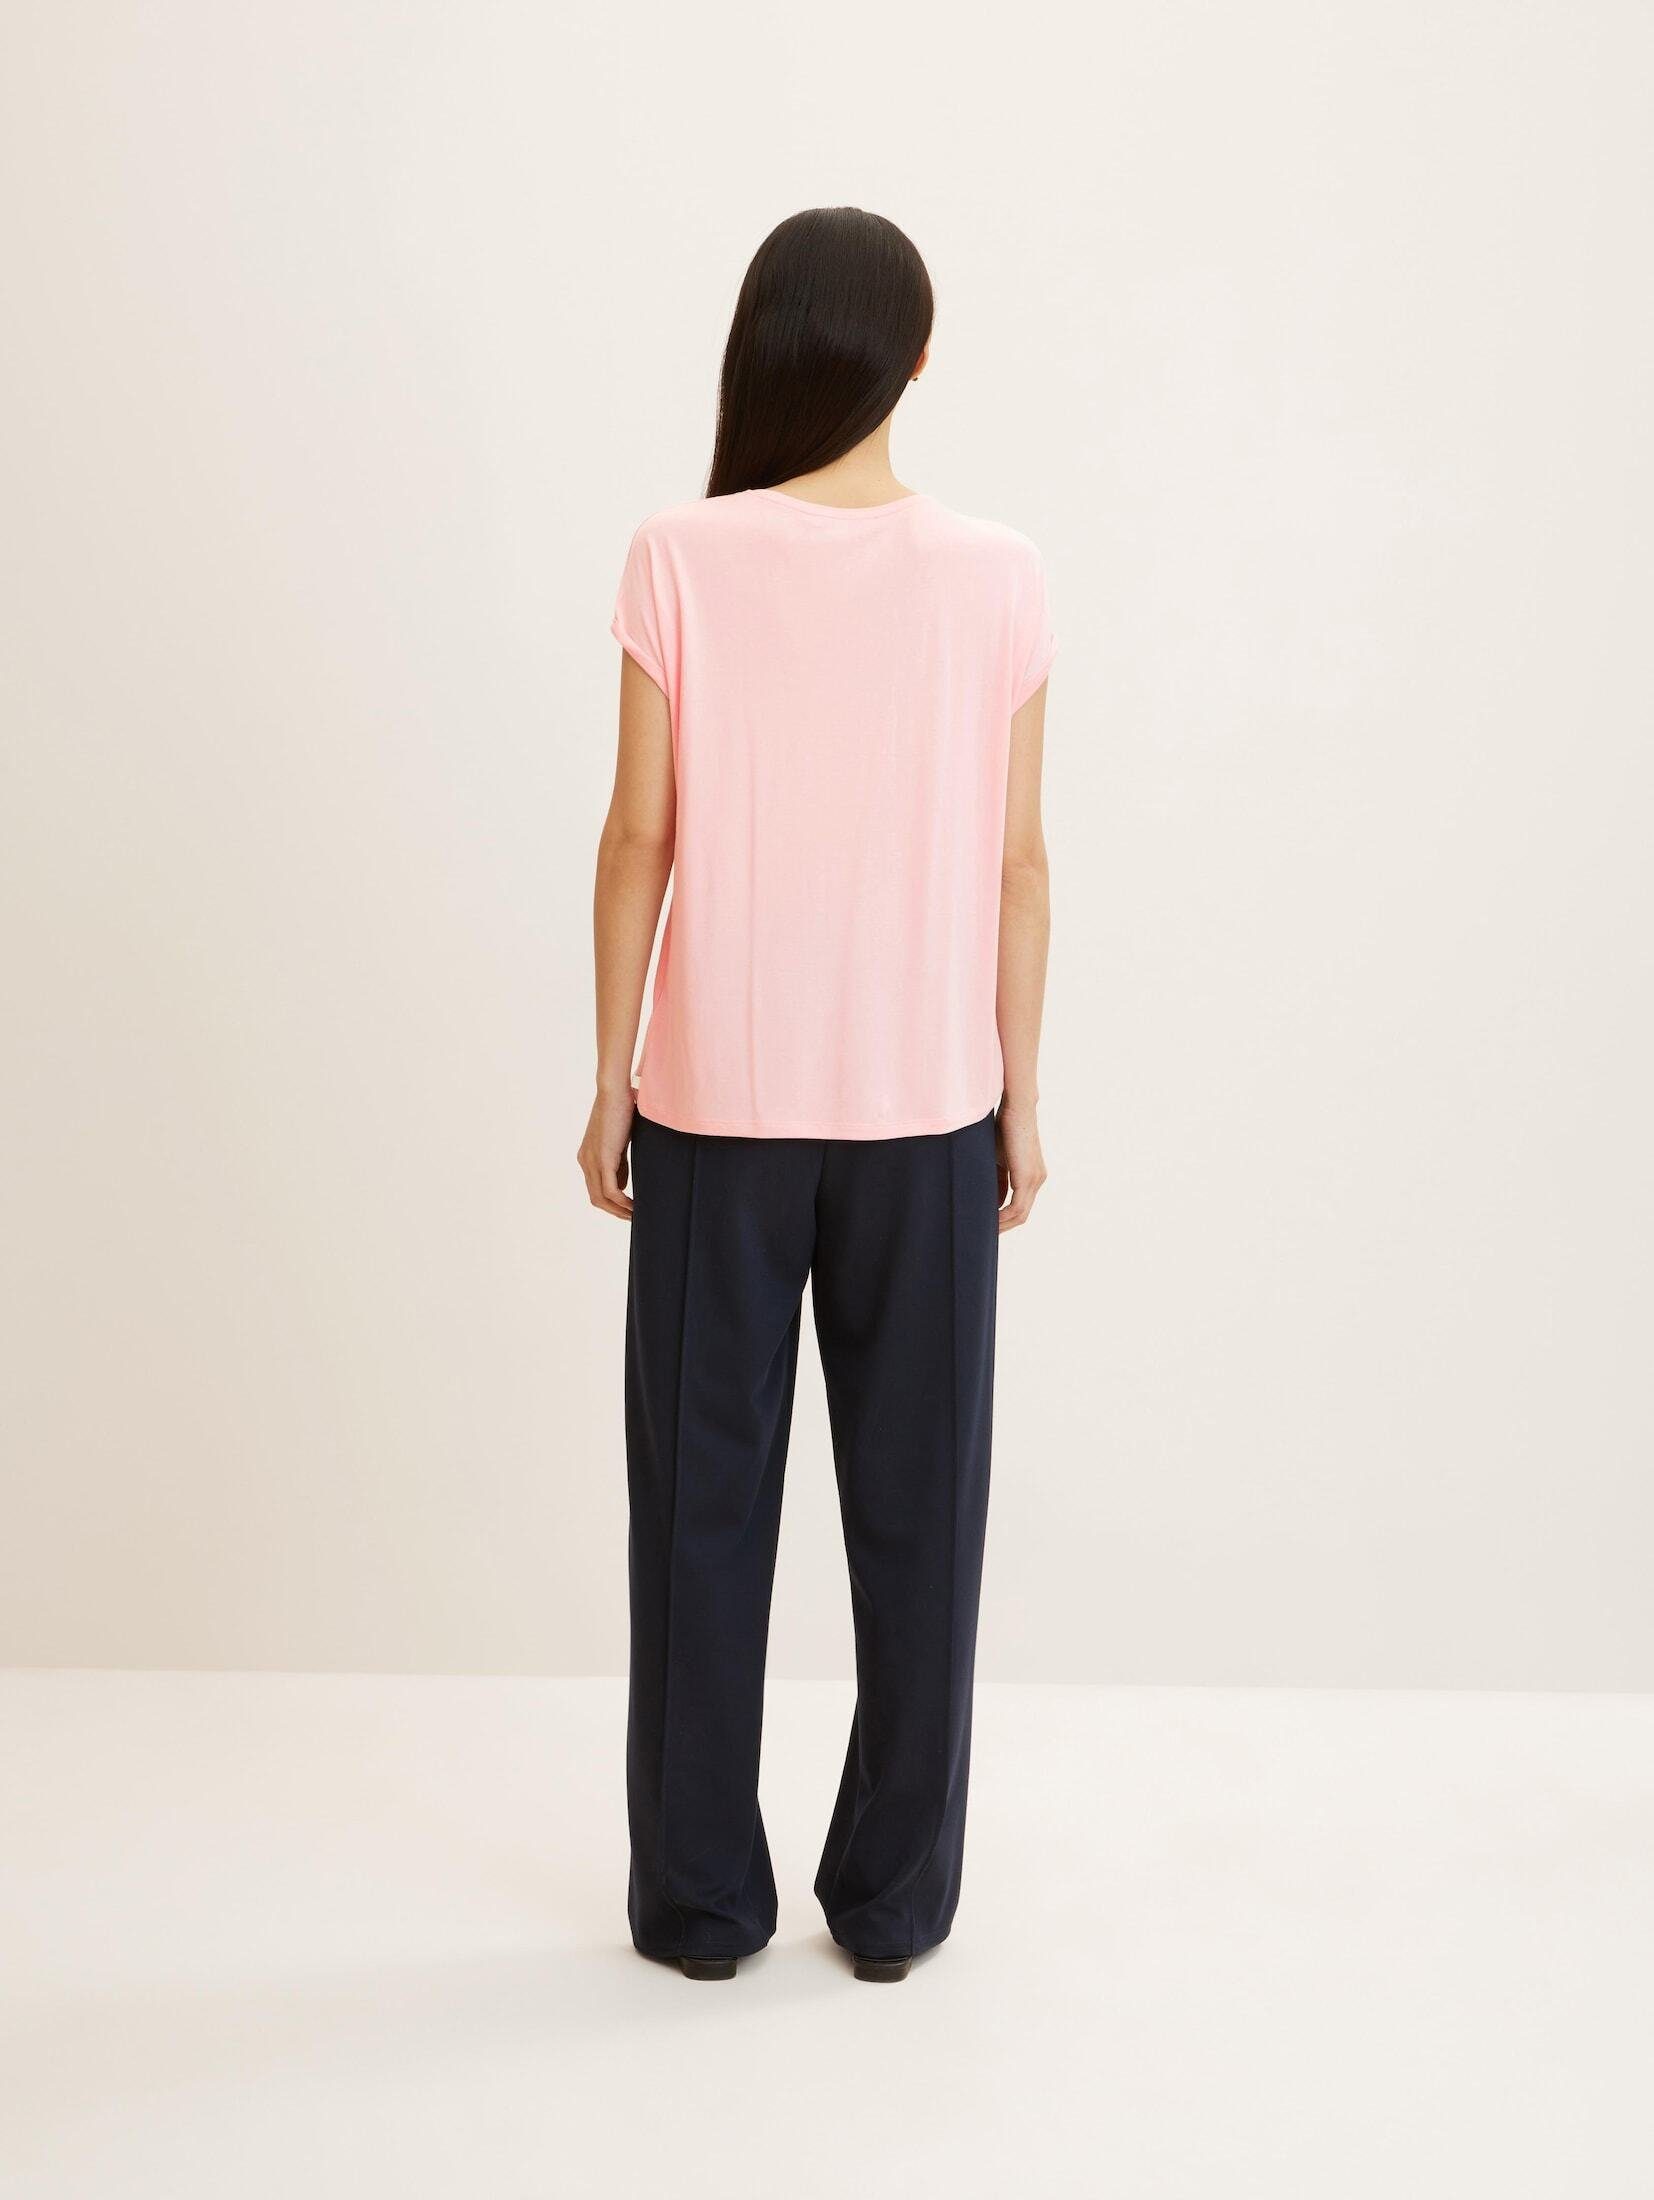 TOM TAILOR pink Denim soft Basic T-Shirt Langarmshirt